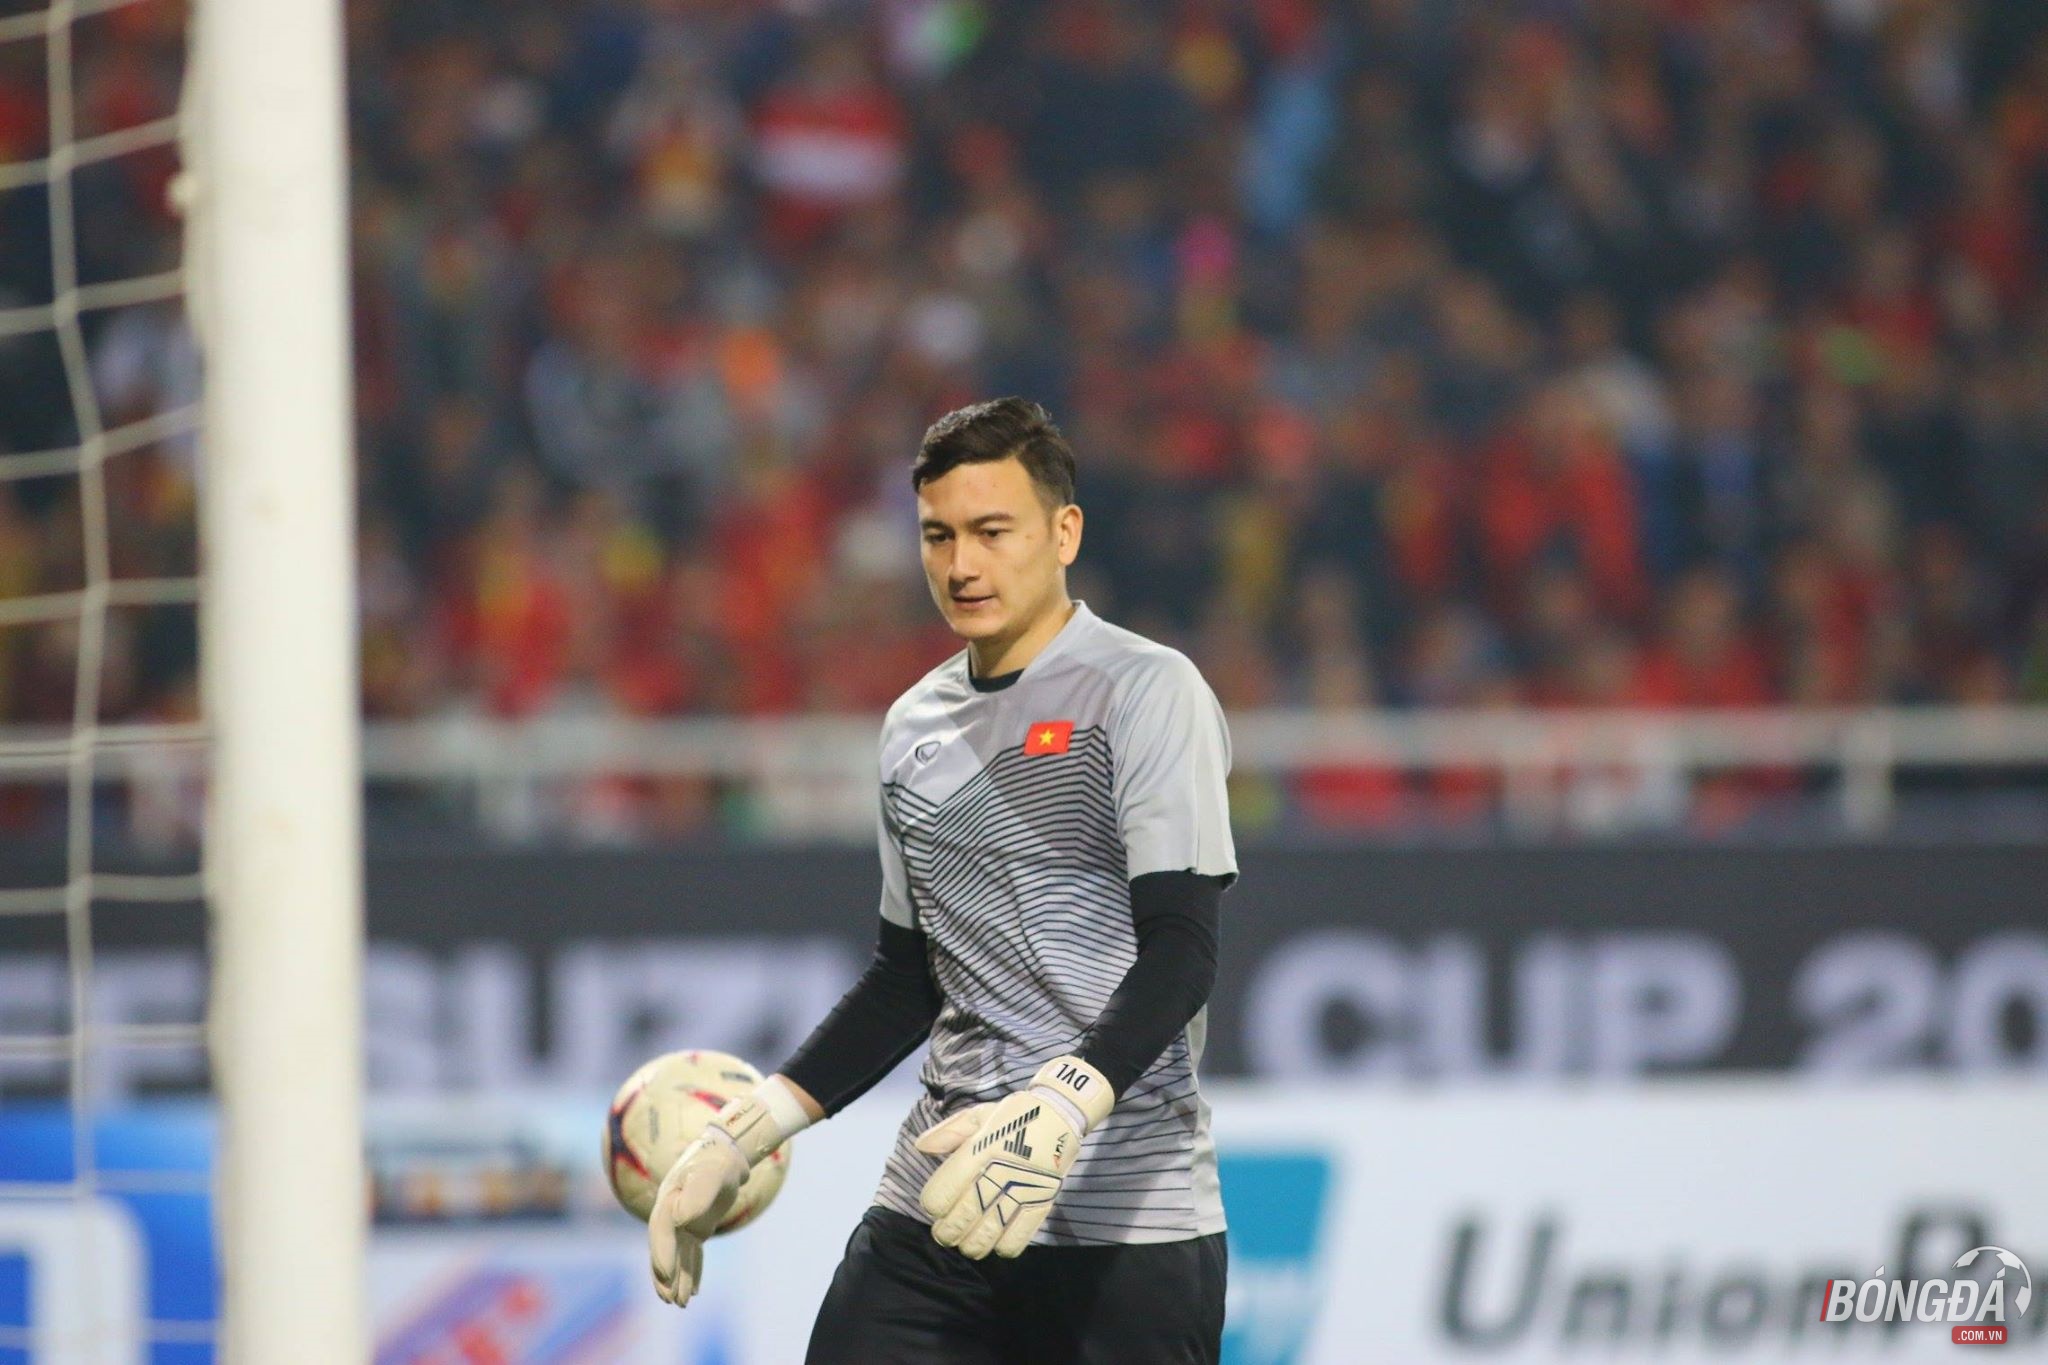 TRỰC TIẾP: ĐT Việt Nam 0-0 ĐT Malaysia: HLV Park Hang-seo tung đội hình mạnh nhất - Bóng Đá